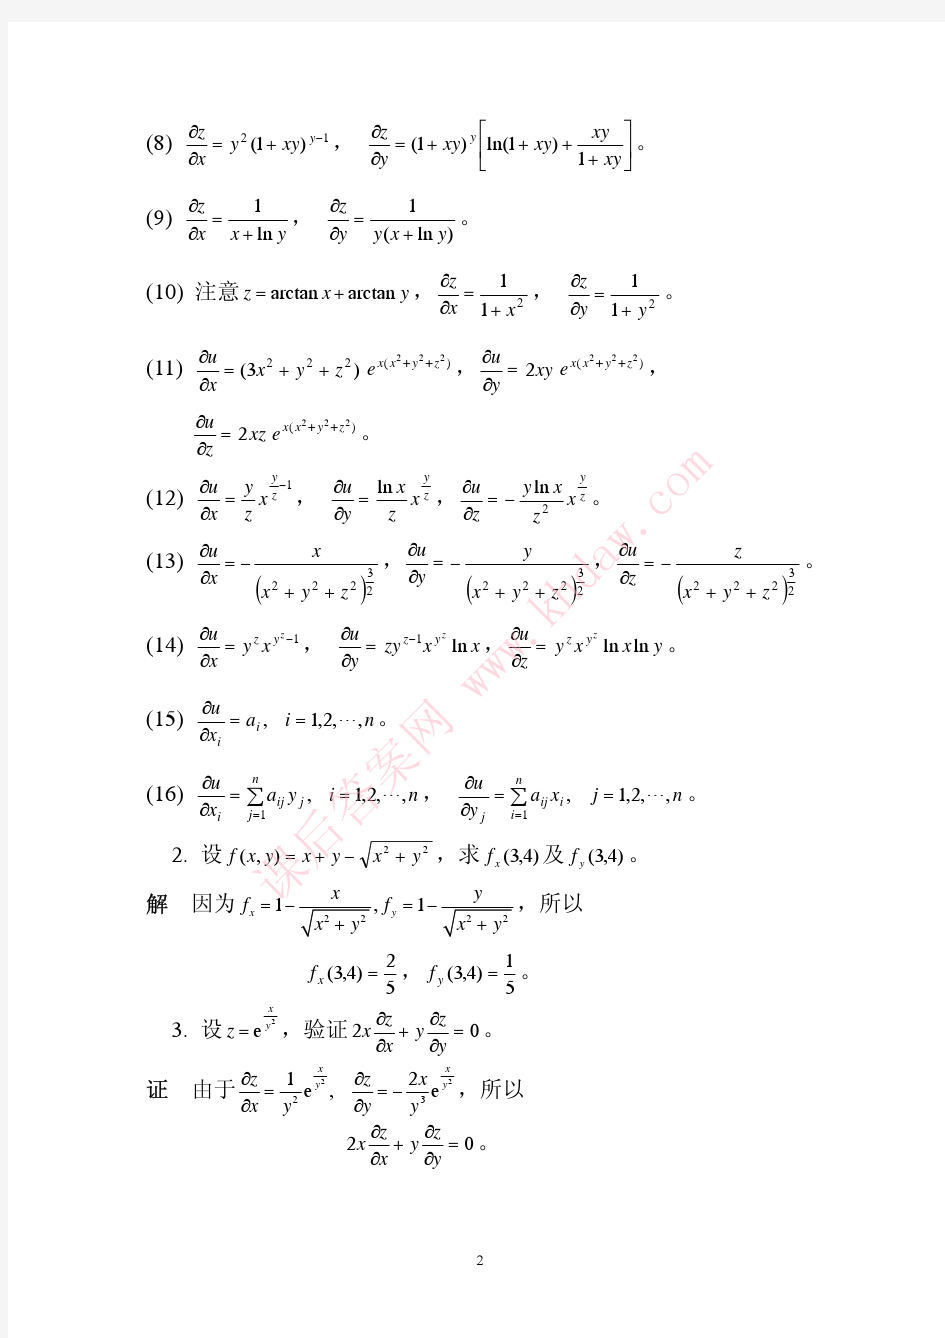 数学分析课后习题答案--高教第二版(陈纪修)--12章